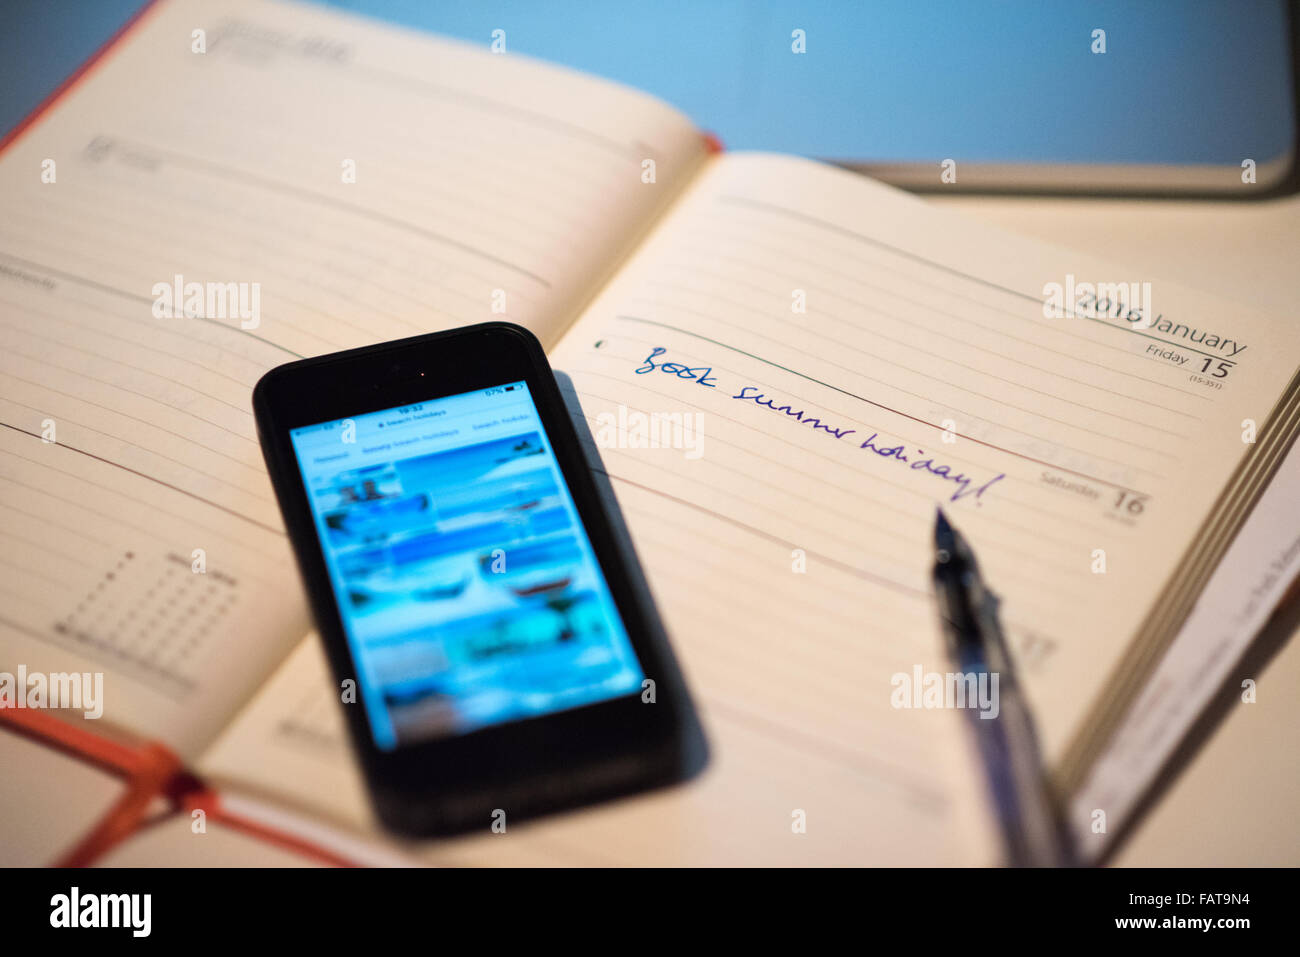 Un diario aperto con le parole del Libro vacanza estiva scarabocchiati su una pagina a fianco di uno smart phone con foto di pacchetti vacanze Foto Stock